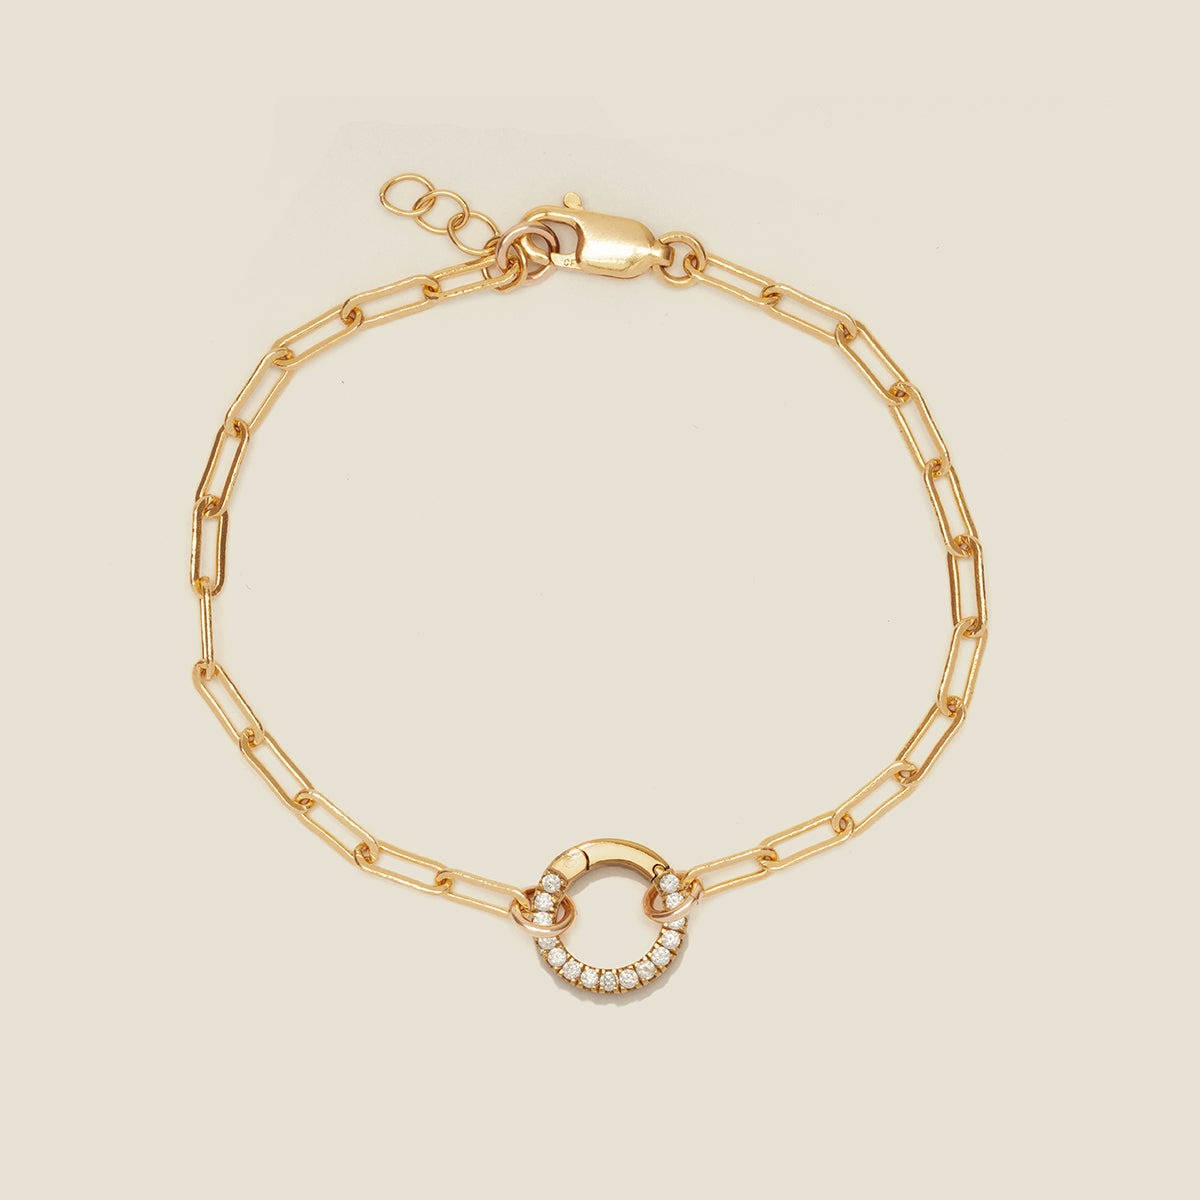 Jude Charm Bracelet Gold Filled / With CZ Link Lock / 6" Bracelet